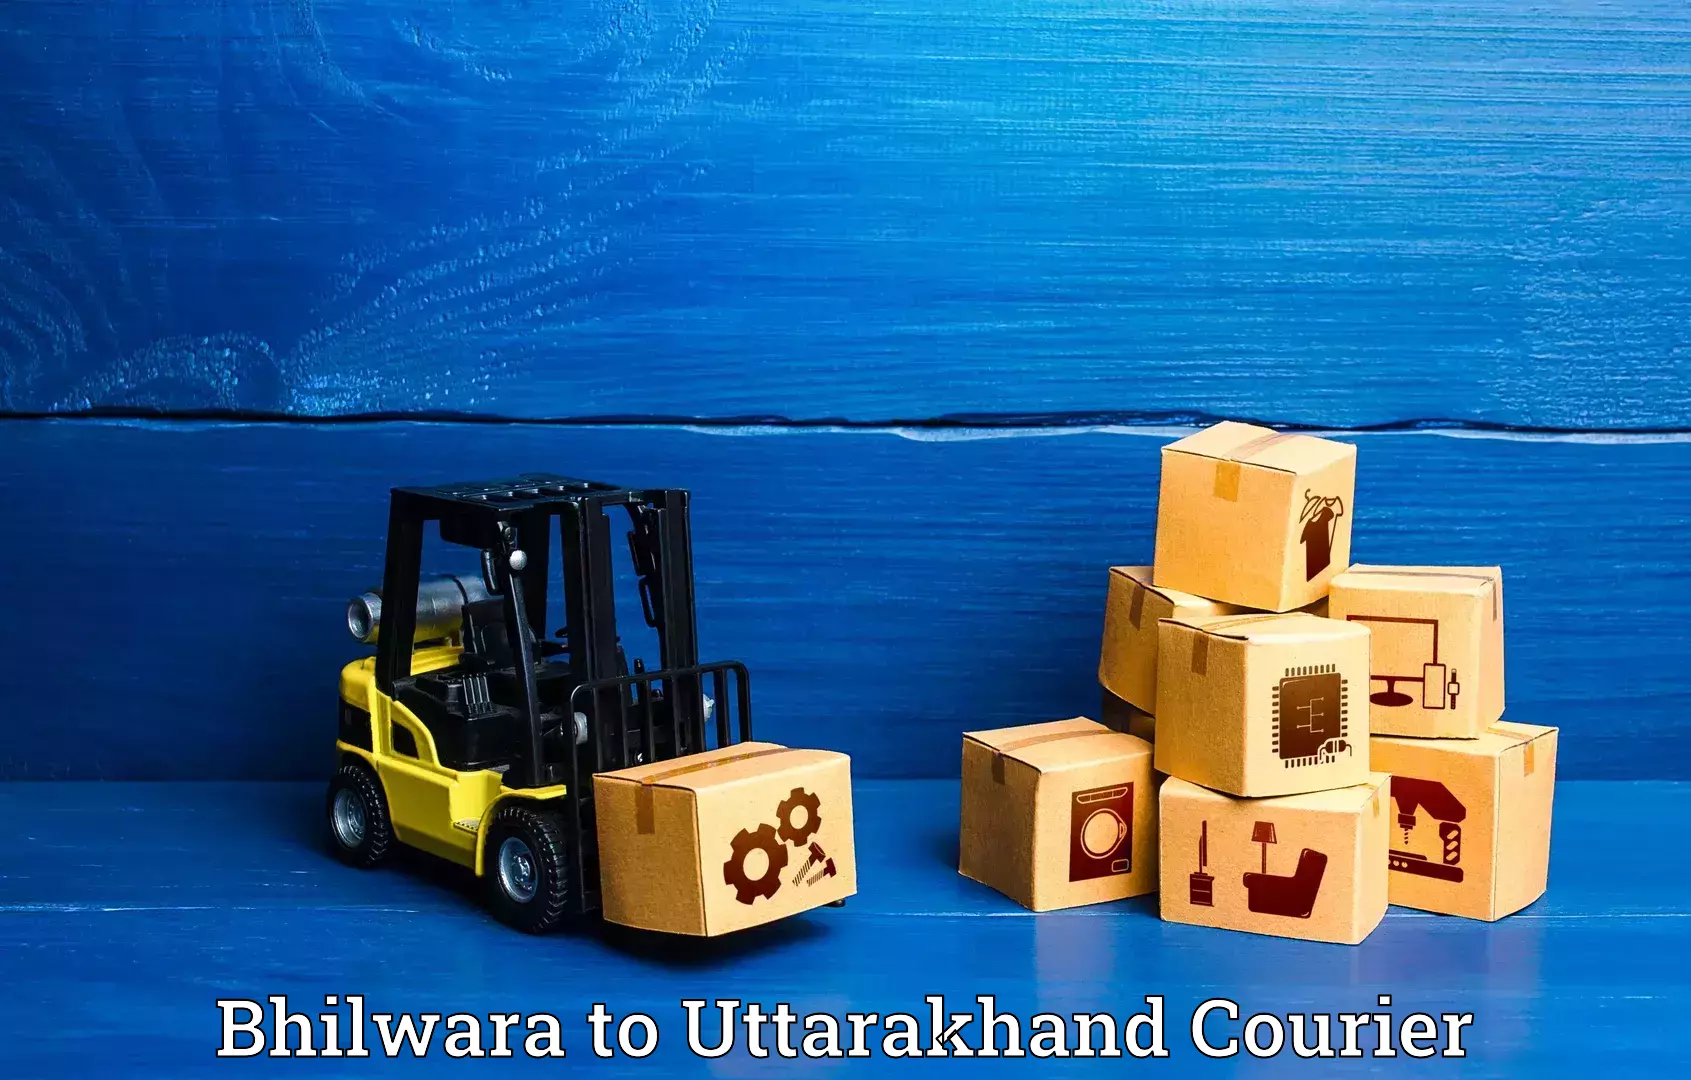 Baggage transport technology Bhilwara to Uttarakhand